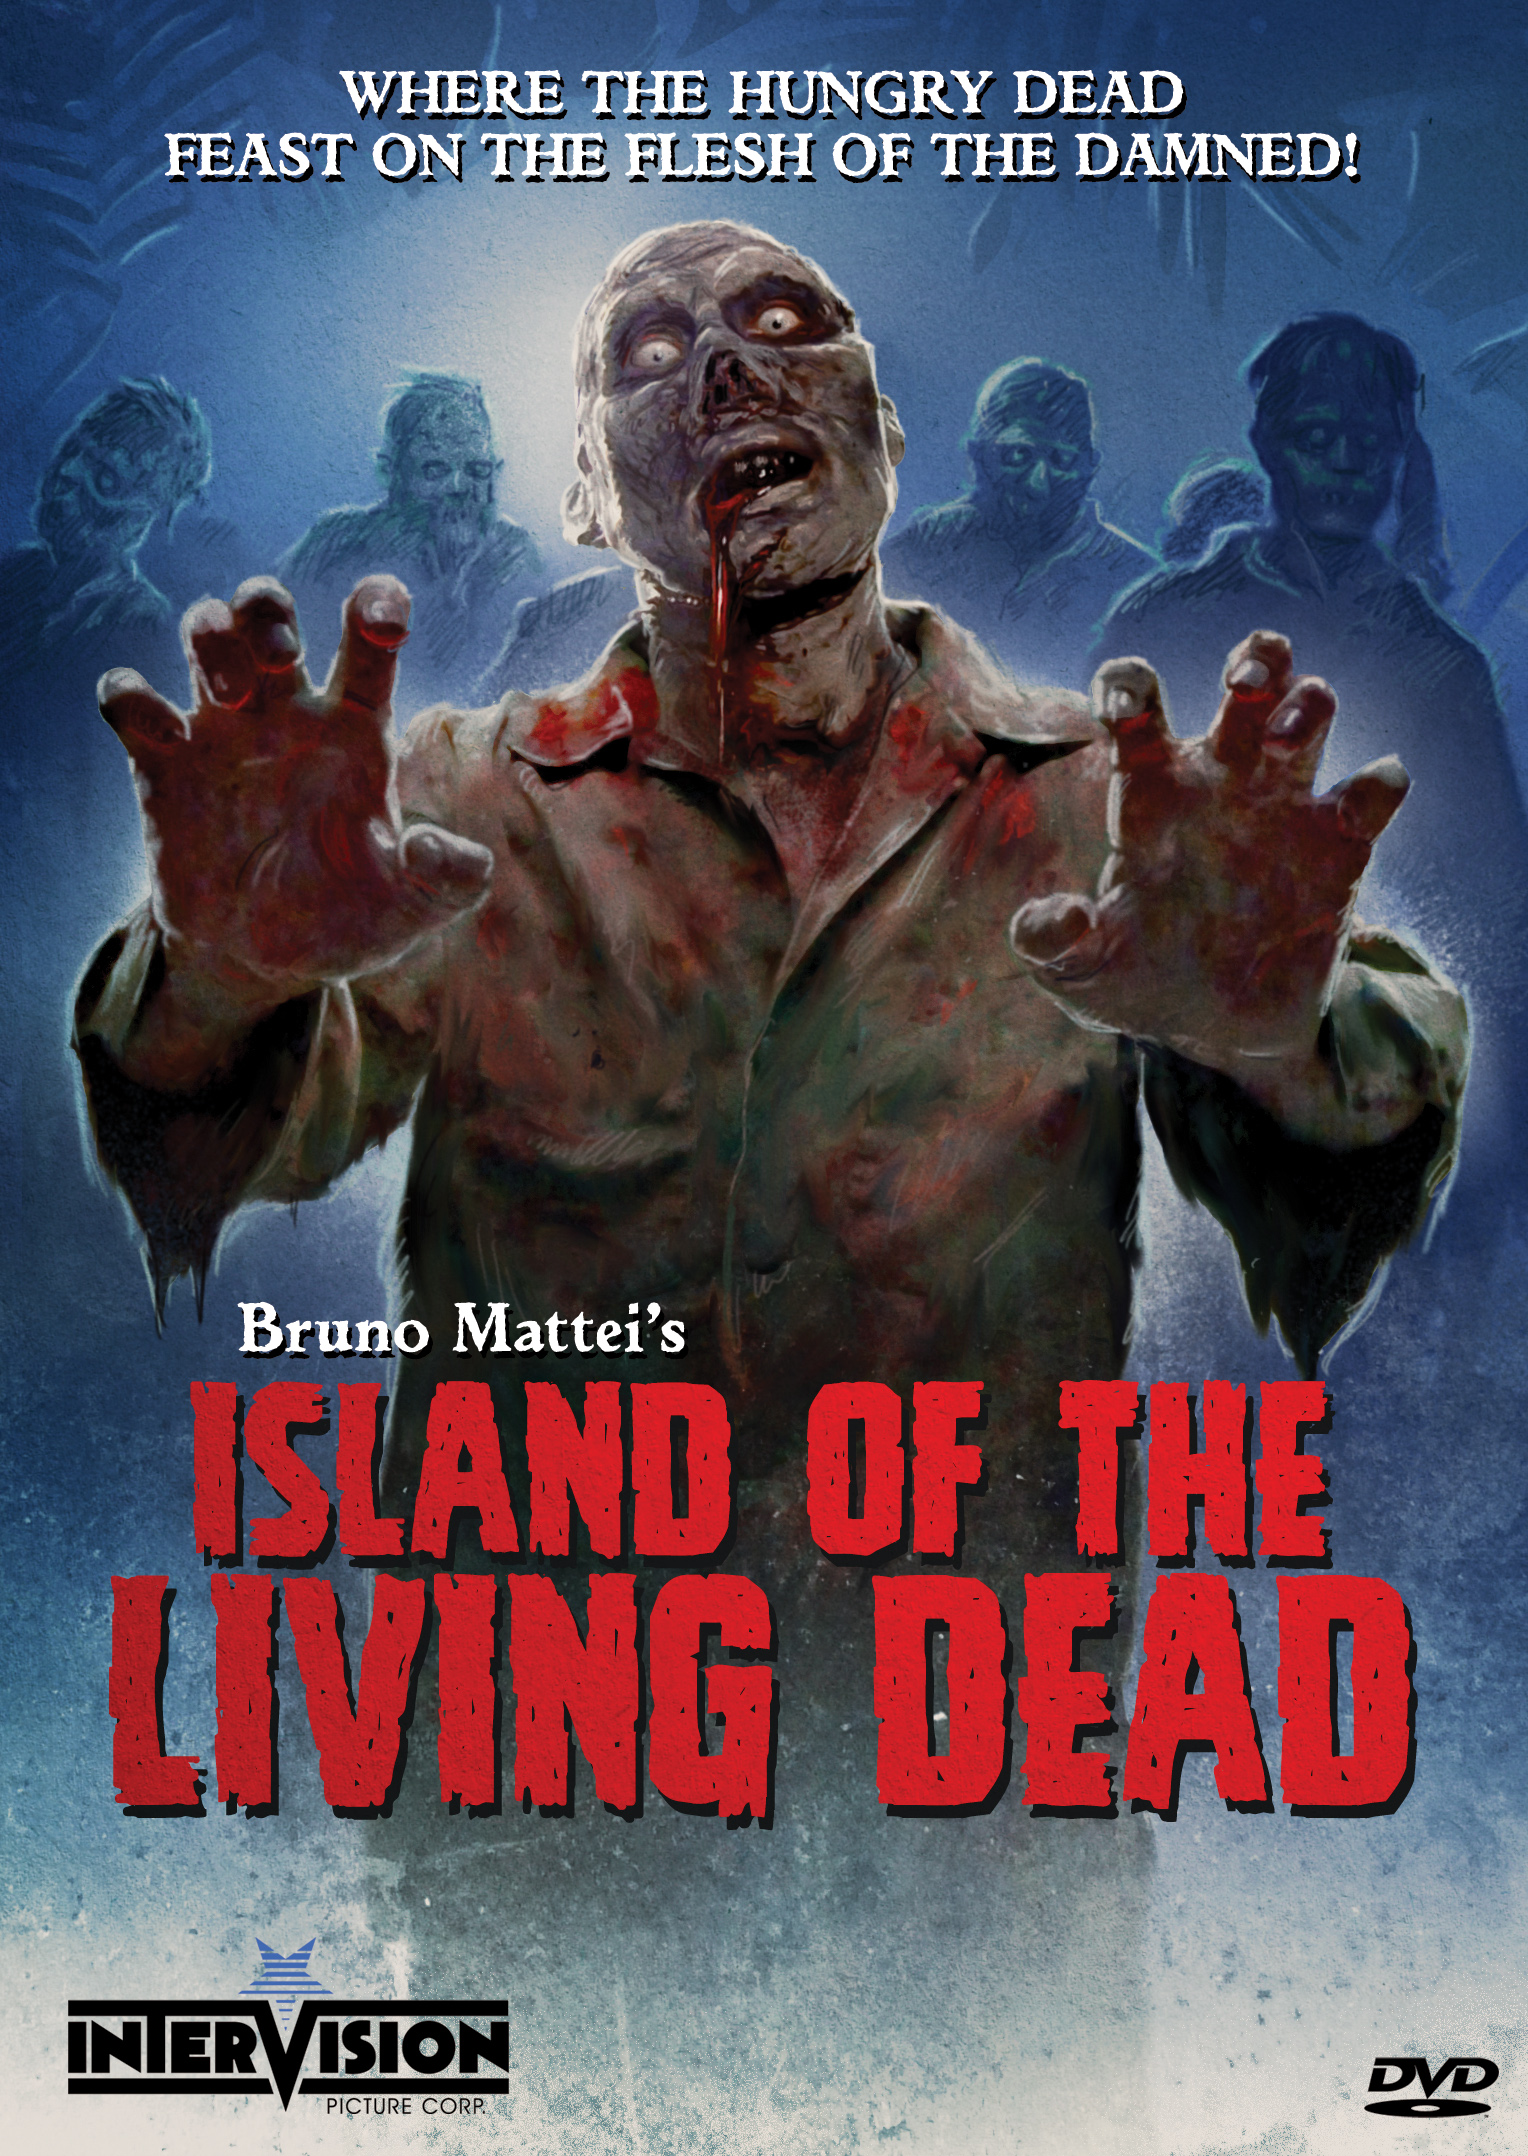 L'isola dei morti-viventi